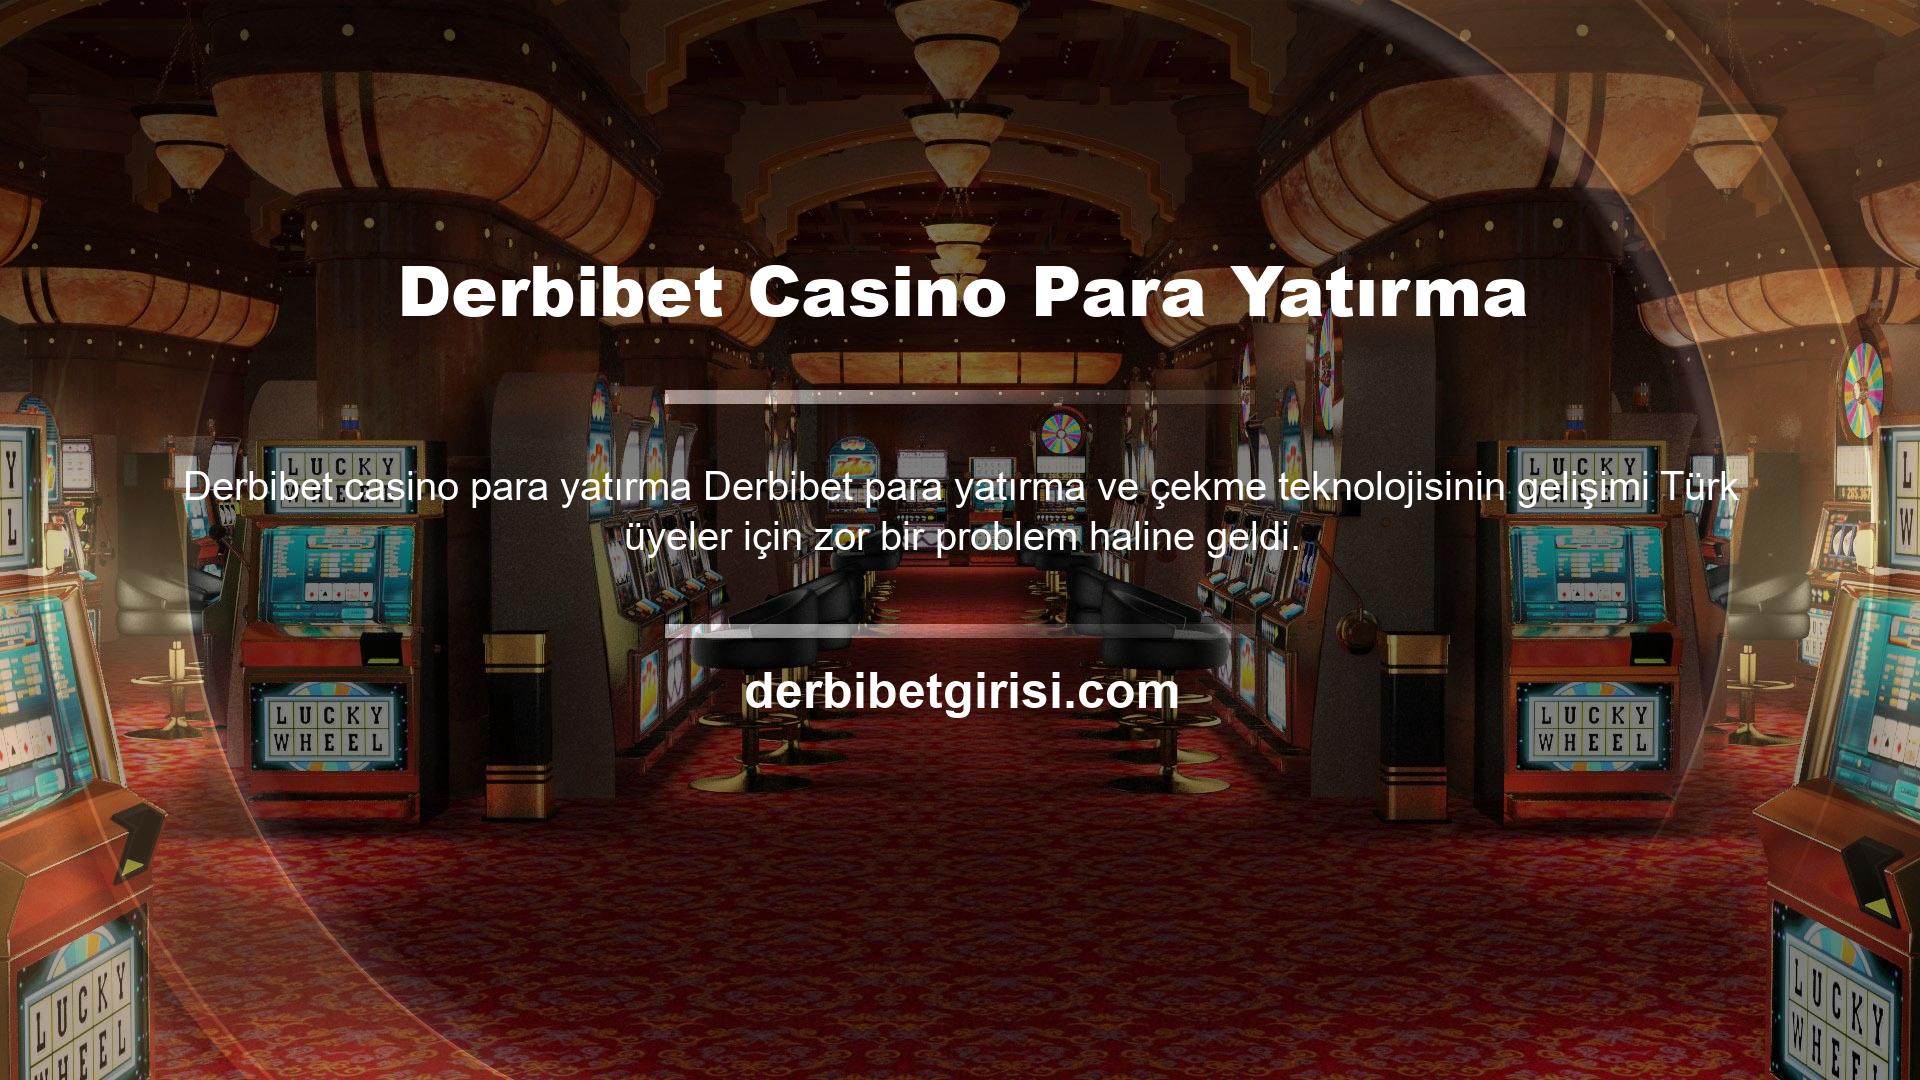 Derbibet Casino, tüm oyunları tek çatı altında sunmayı ve bu segmentteki değerli kullanıcıları bir hedefe ulaştırmayı amaçlayan bir platformdur